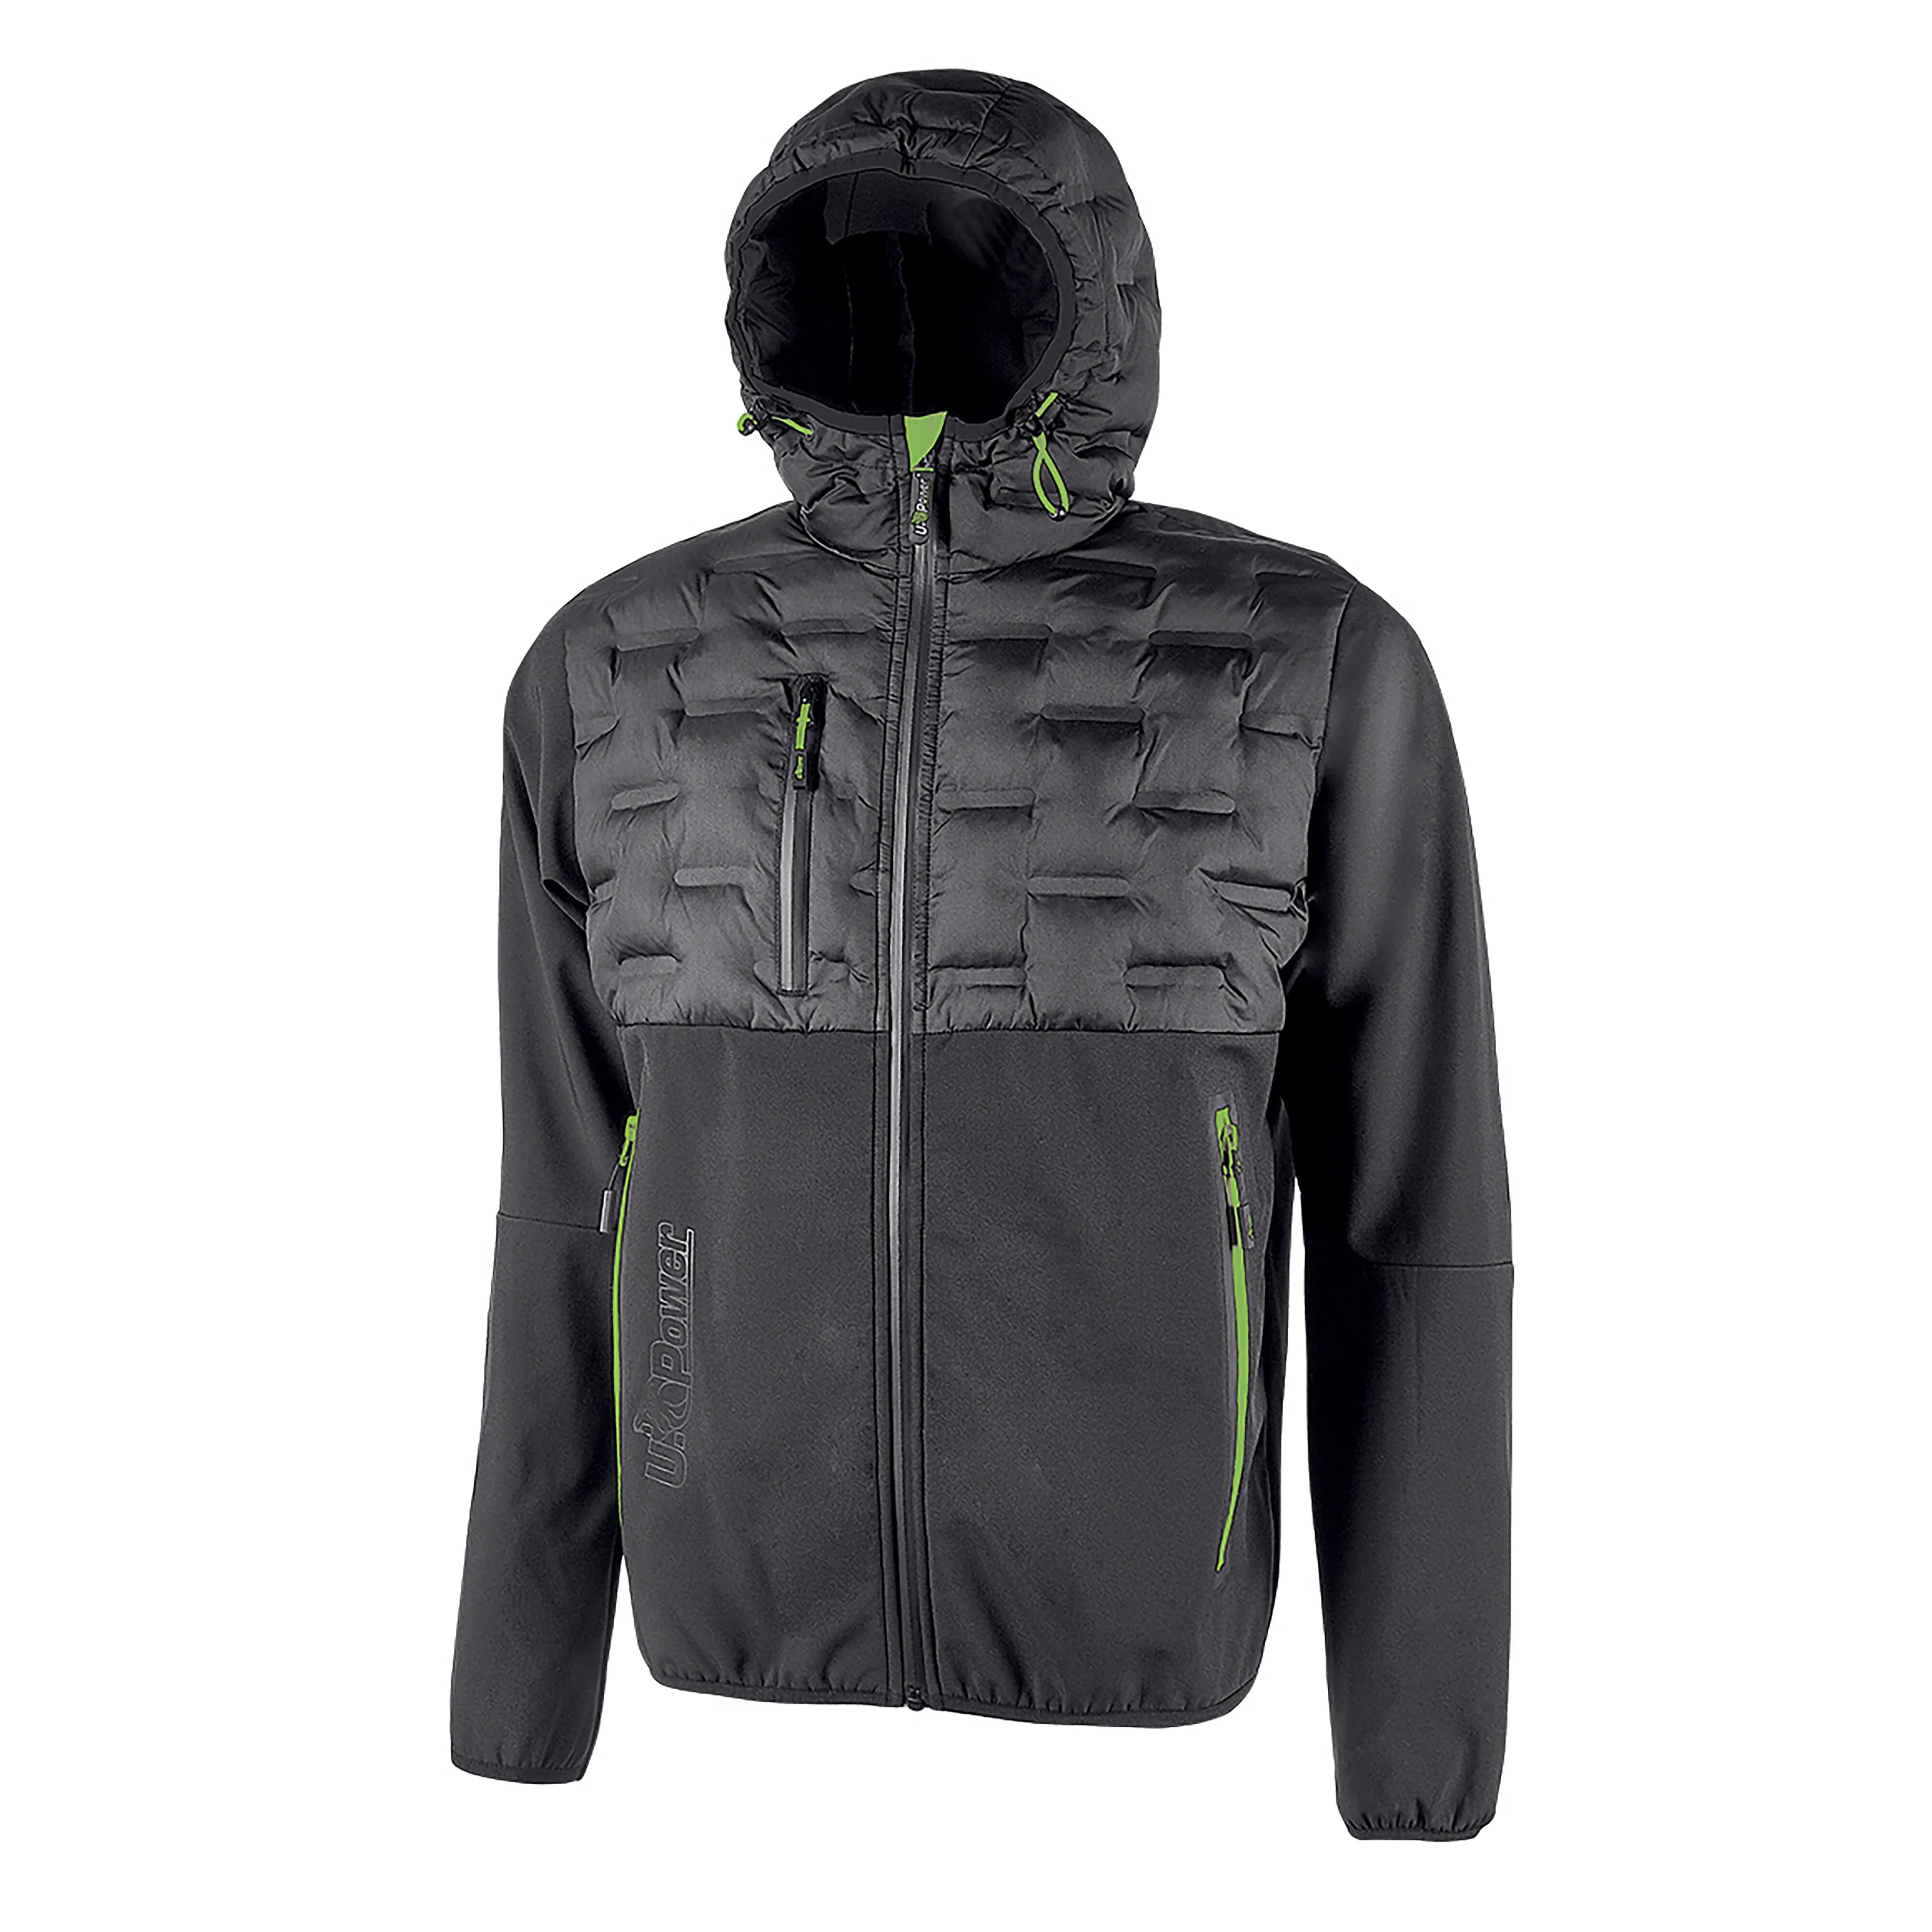 u-power giacca soft shell spock  taglia xl colore grigio inserti verdi idrorepellente